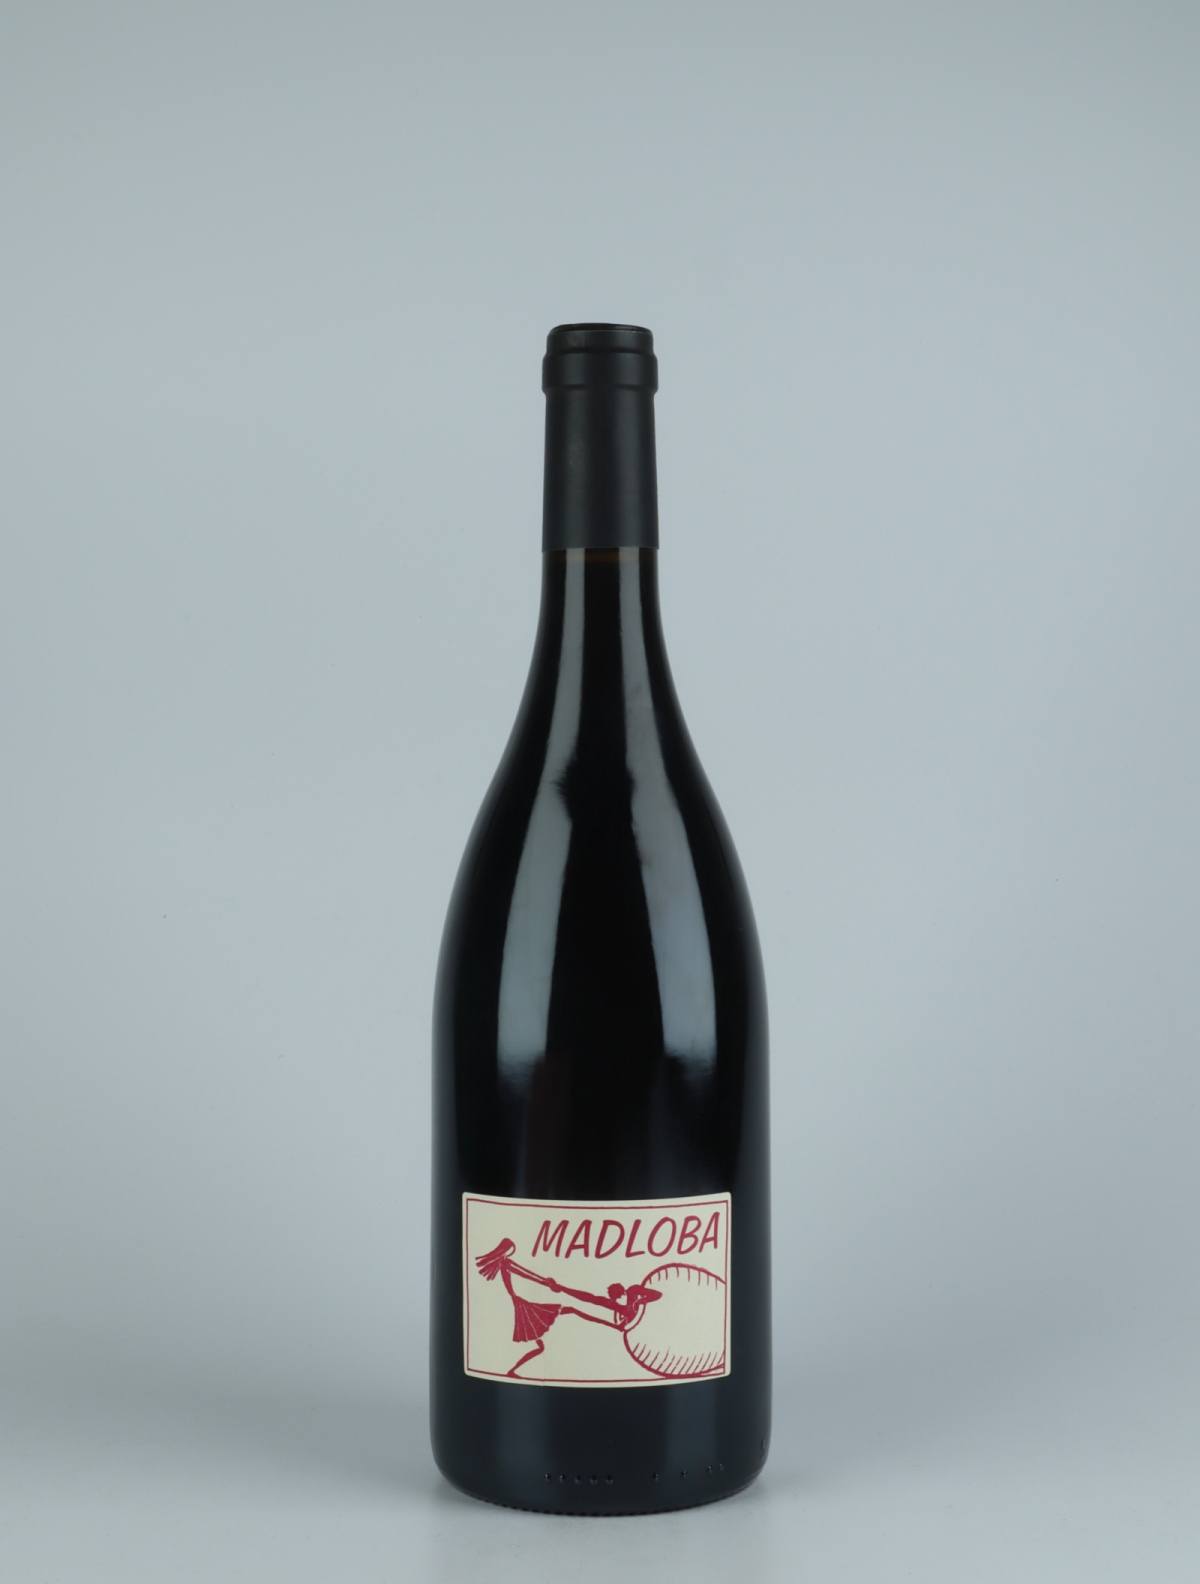 En flaske 2019 Saint-Joseph Madloba Rødvin fra Domaine des Miquettes, Rhône i Frankrig